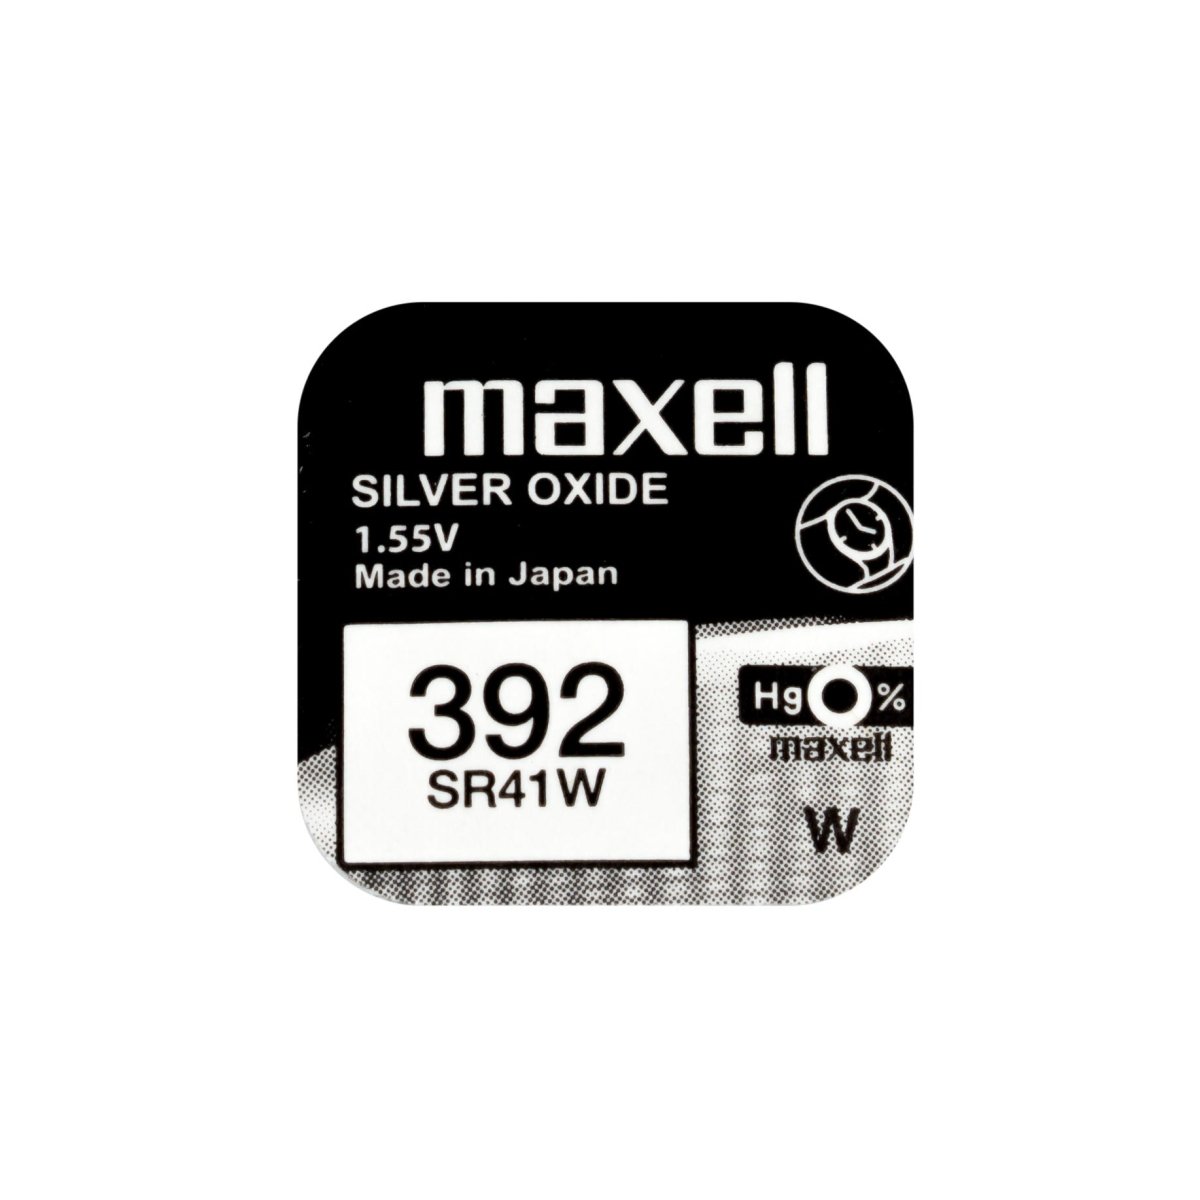 10x Maxell 392 Pila Botón Oxido de Plata SR41W 1.55V - movilcom.com